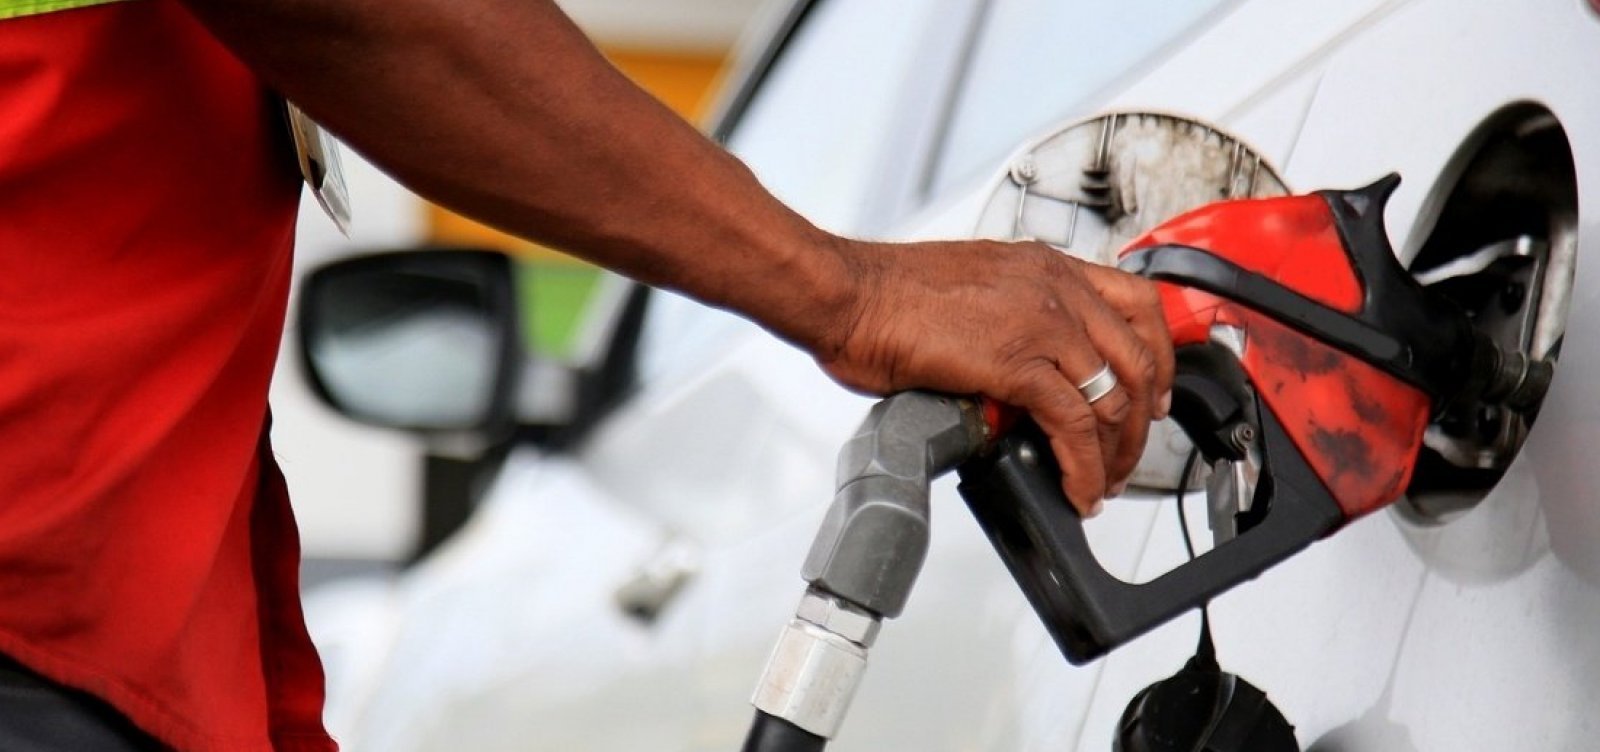 Preço médio da gasolina tem queda de R$ 0,60 em Salvador, após redução de tributos federais